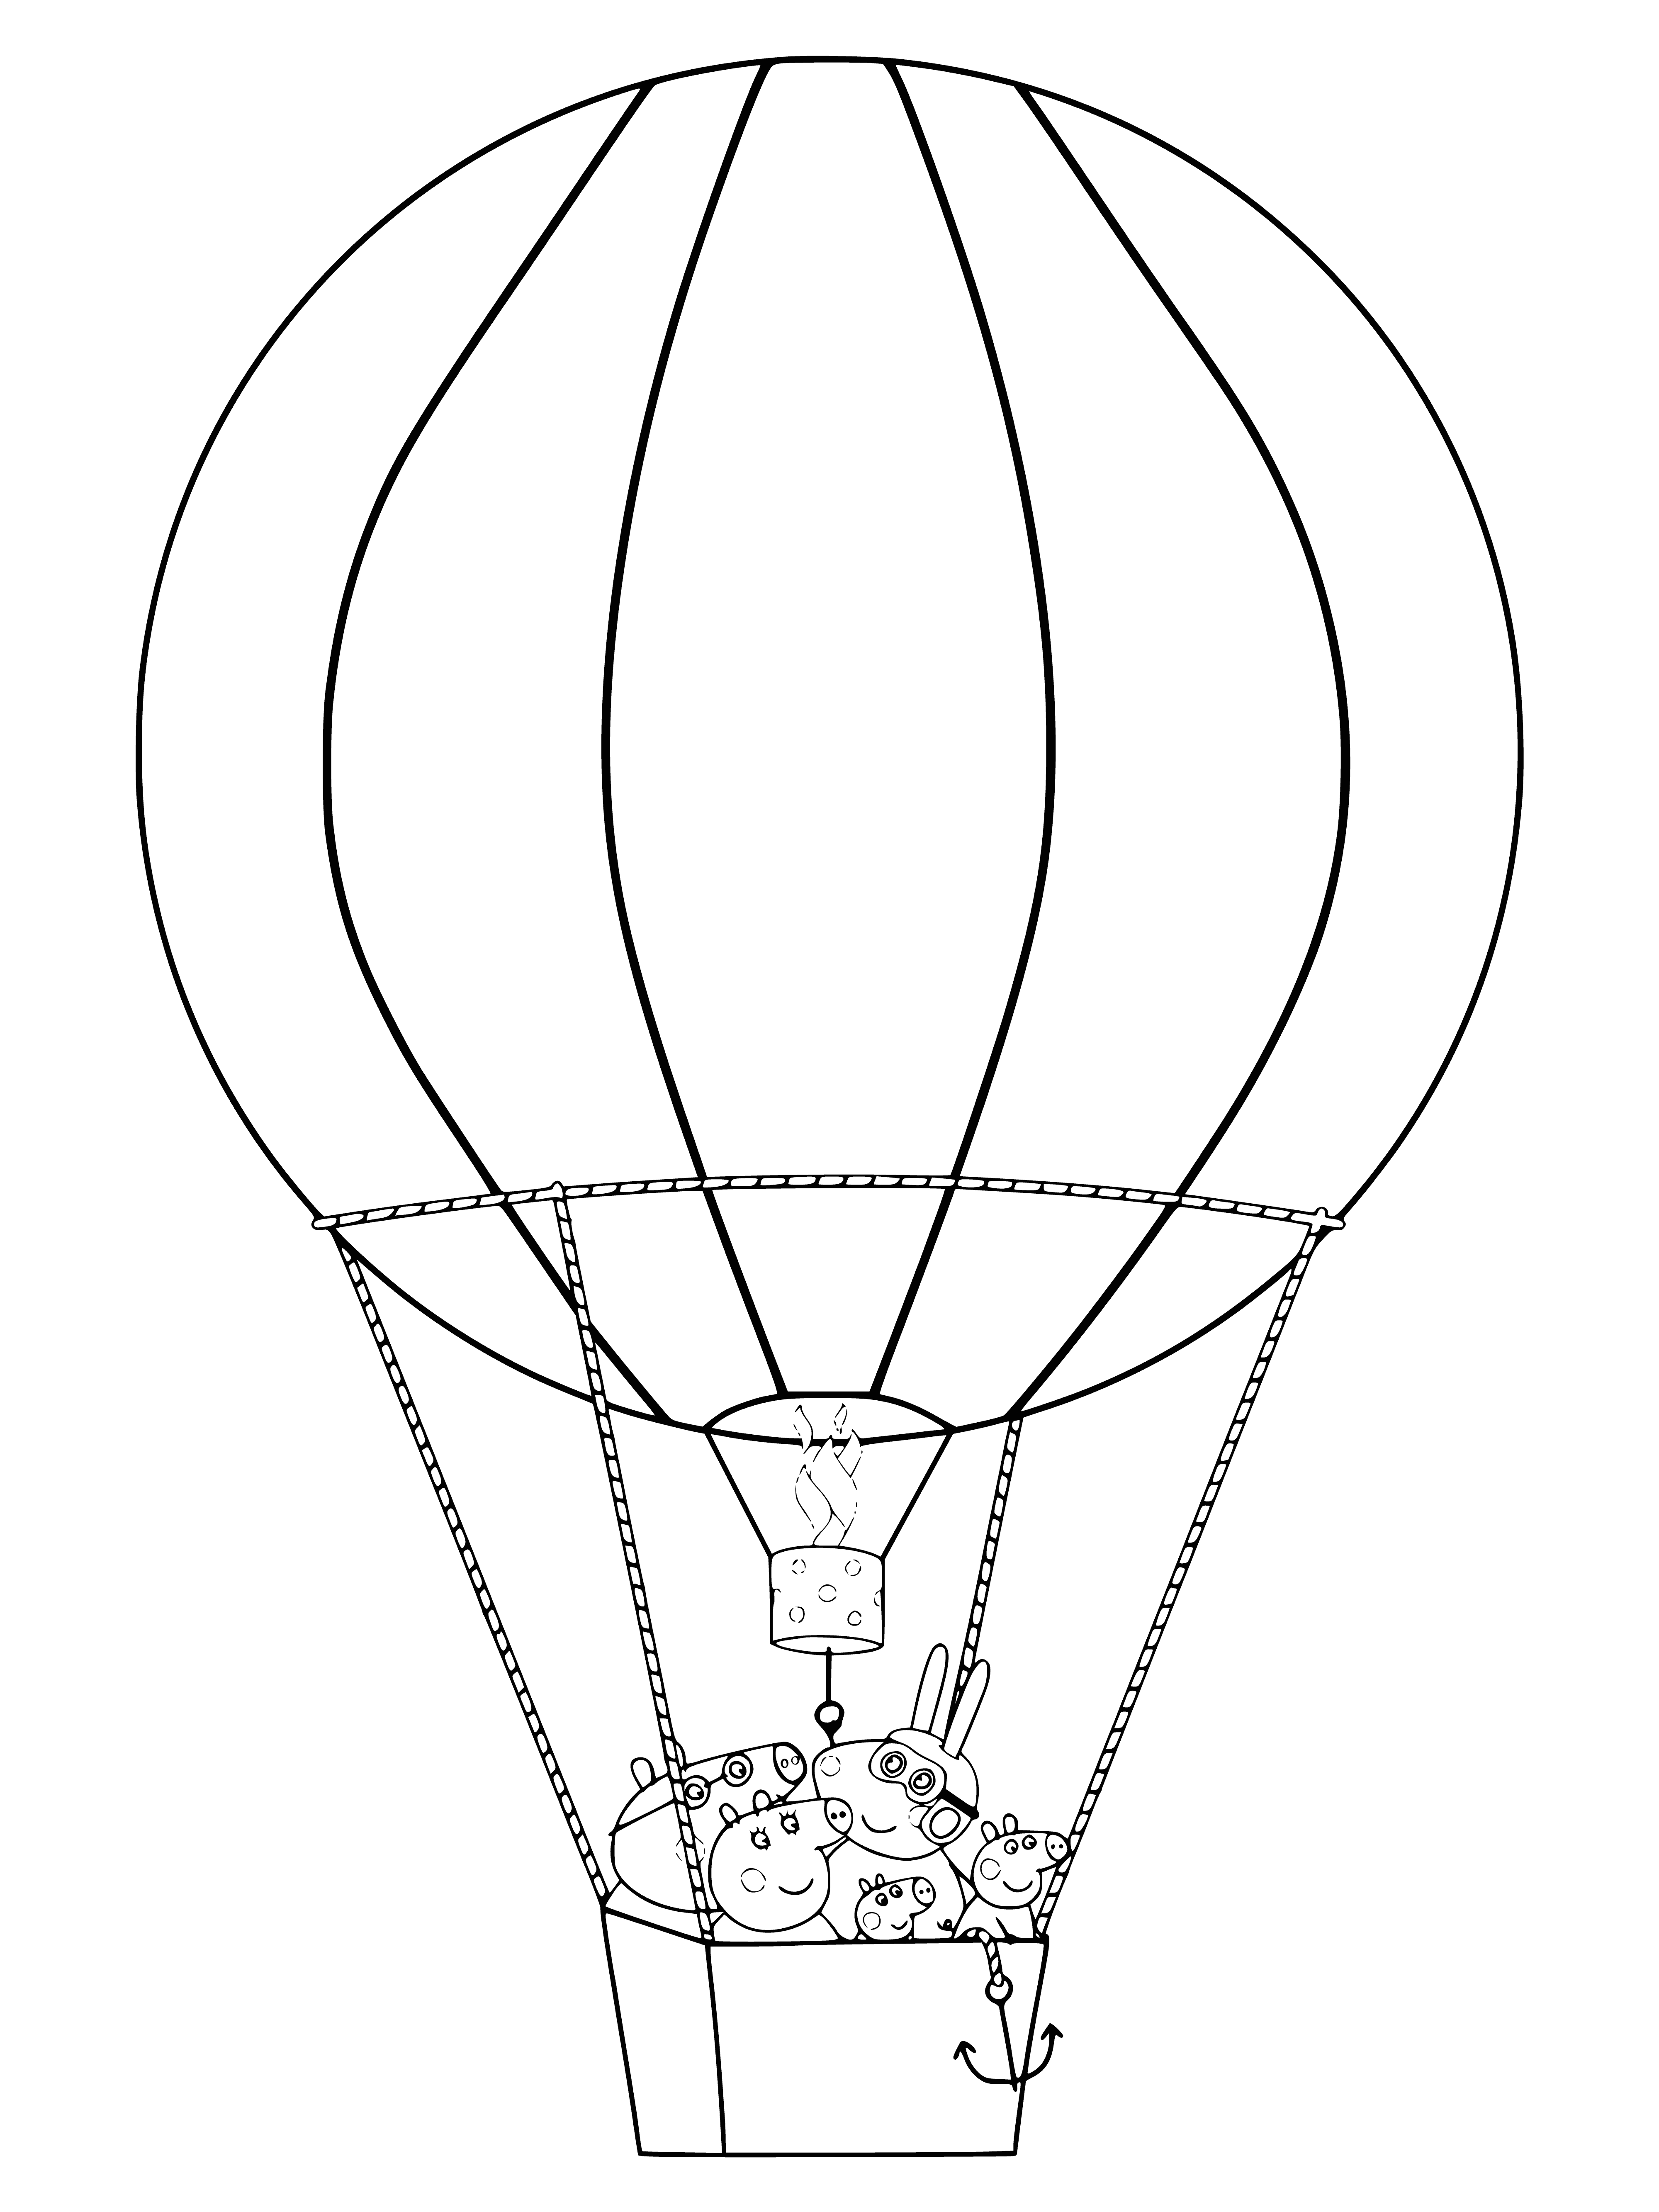 Hot air balloon flight coloring page